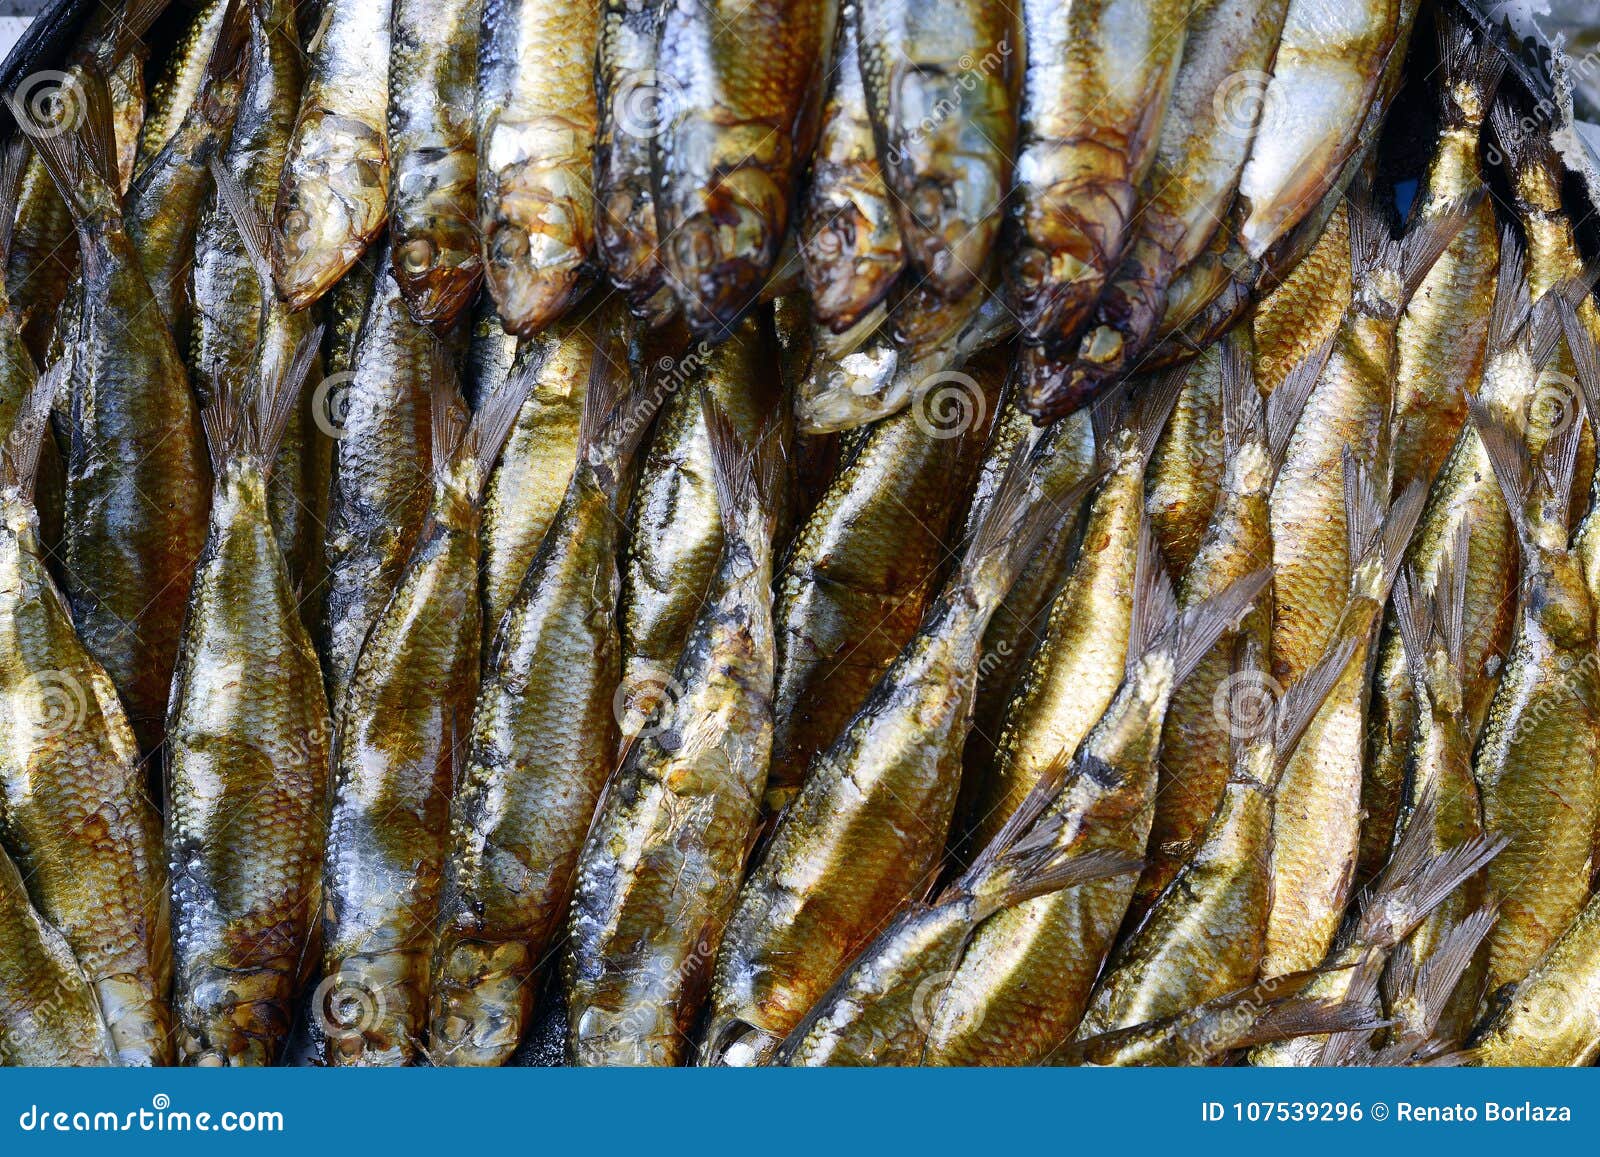 Golden smoked herrings fish sold in wet market. overhead shot